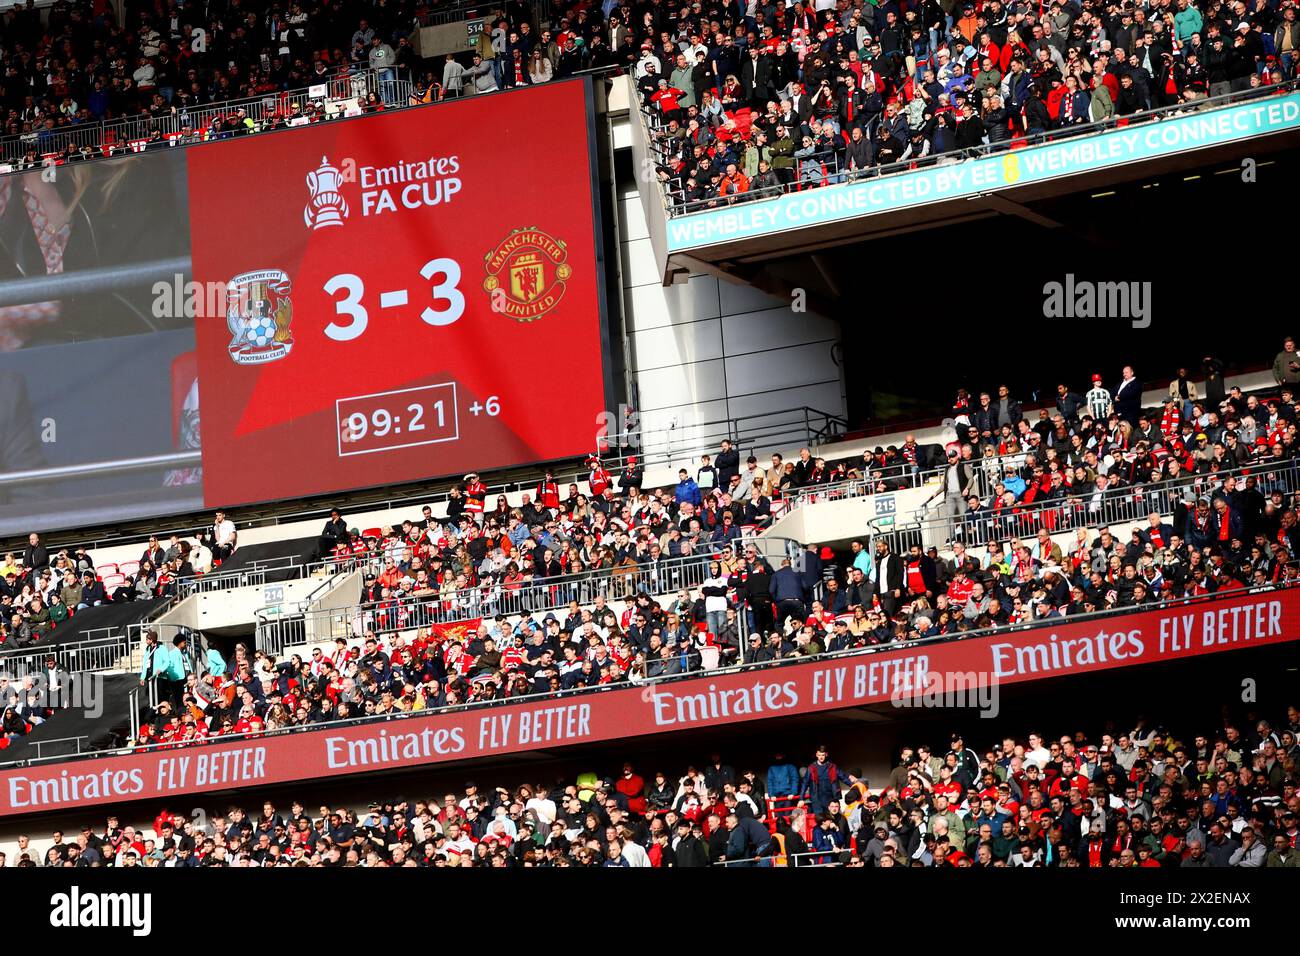 Le score final de 3-3 est affiché - Coventry City v Manchester United, la demi-finale de la Coupe FA Emirates, stade de Wembley, Londres, Royaume-Uni - 21 avril 2024 Banque D'Images